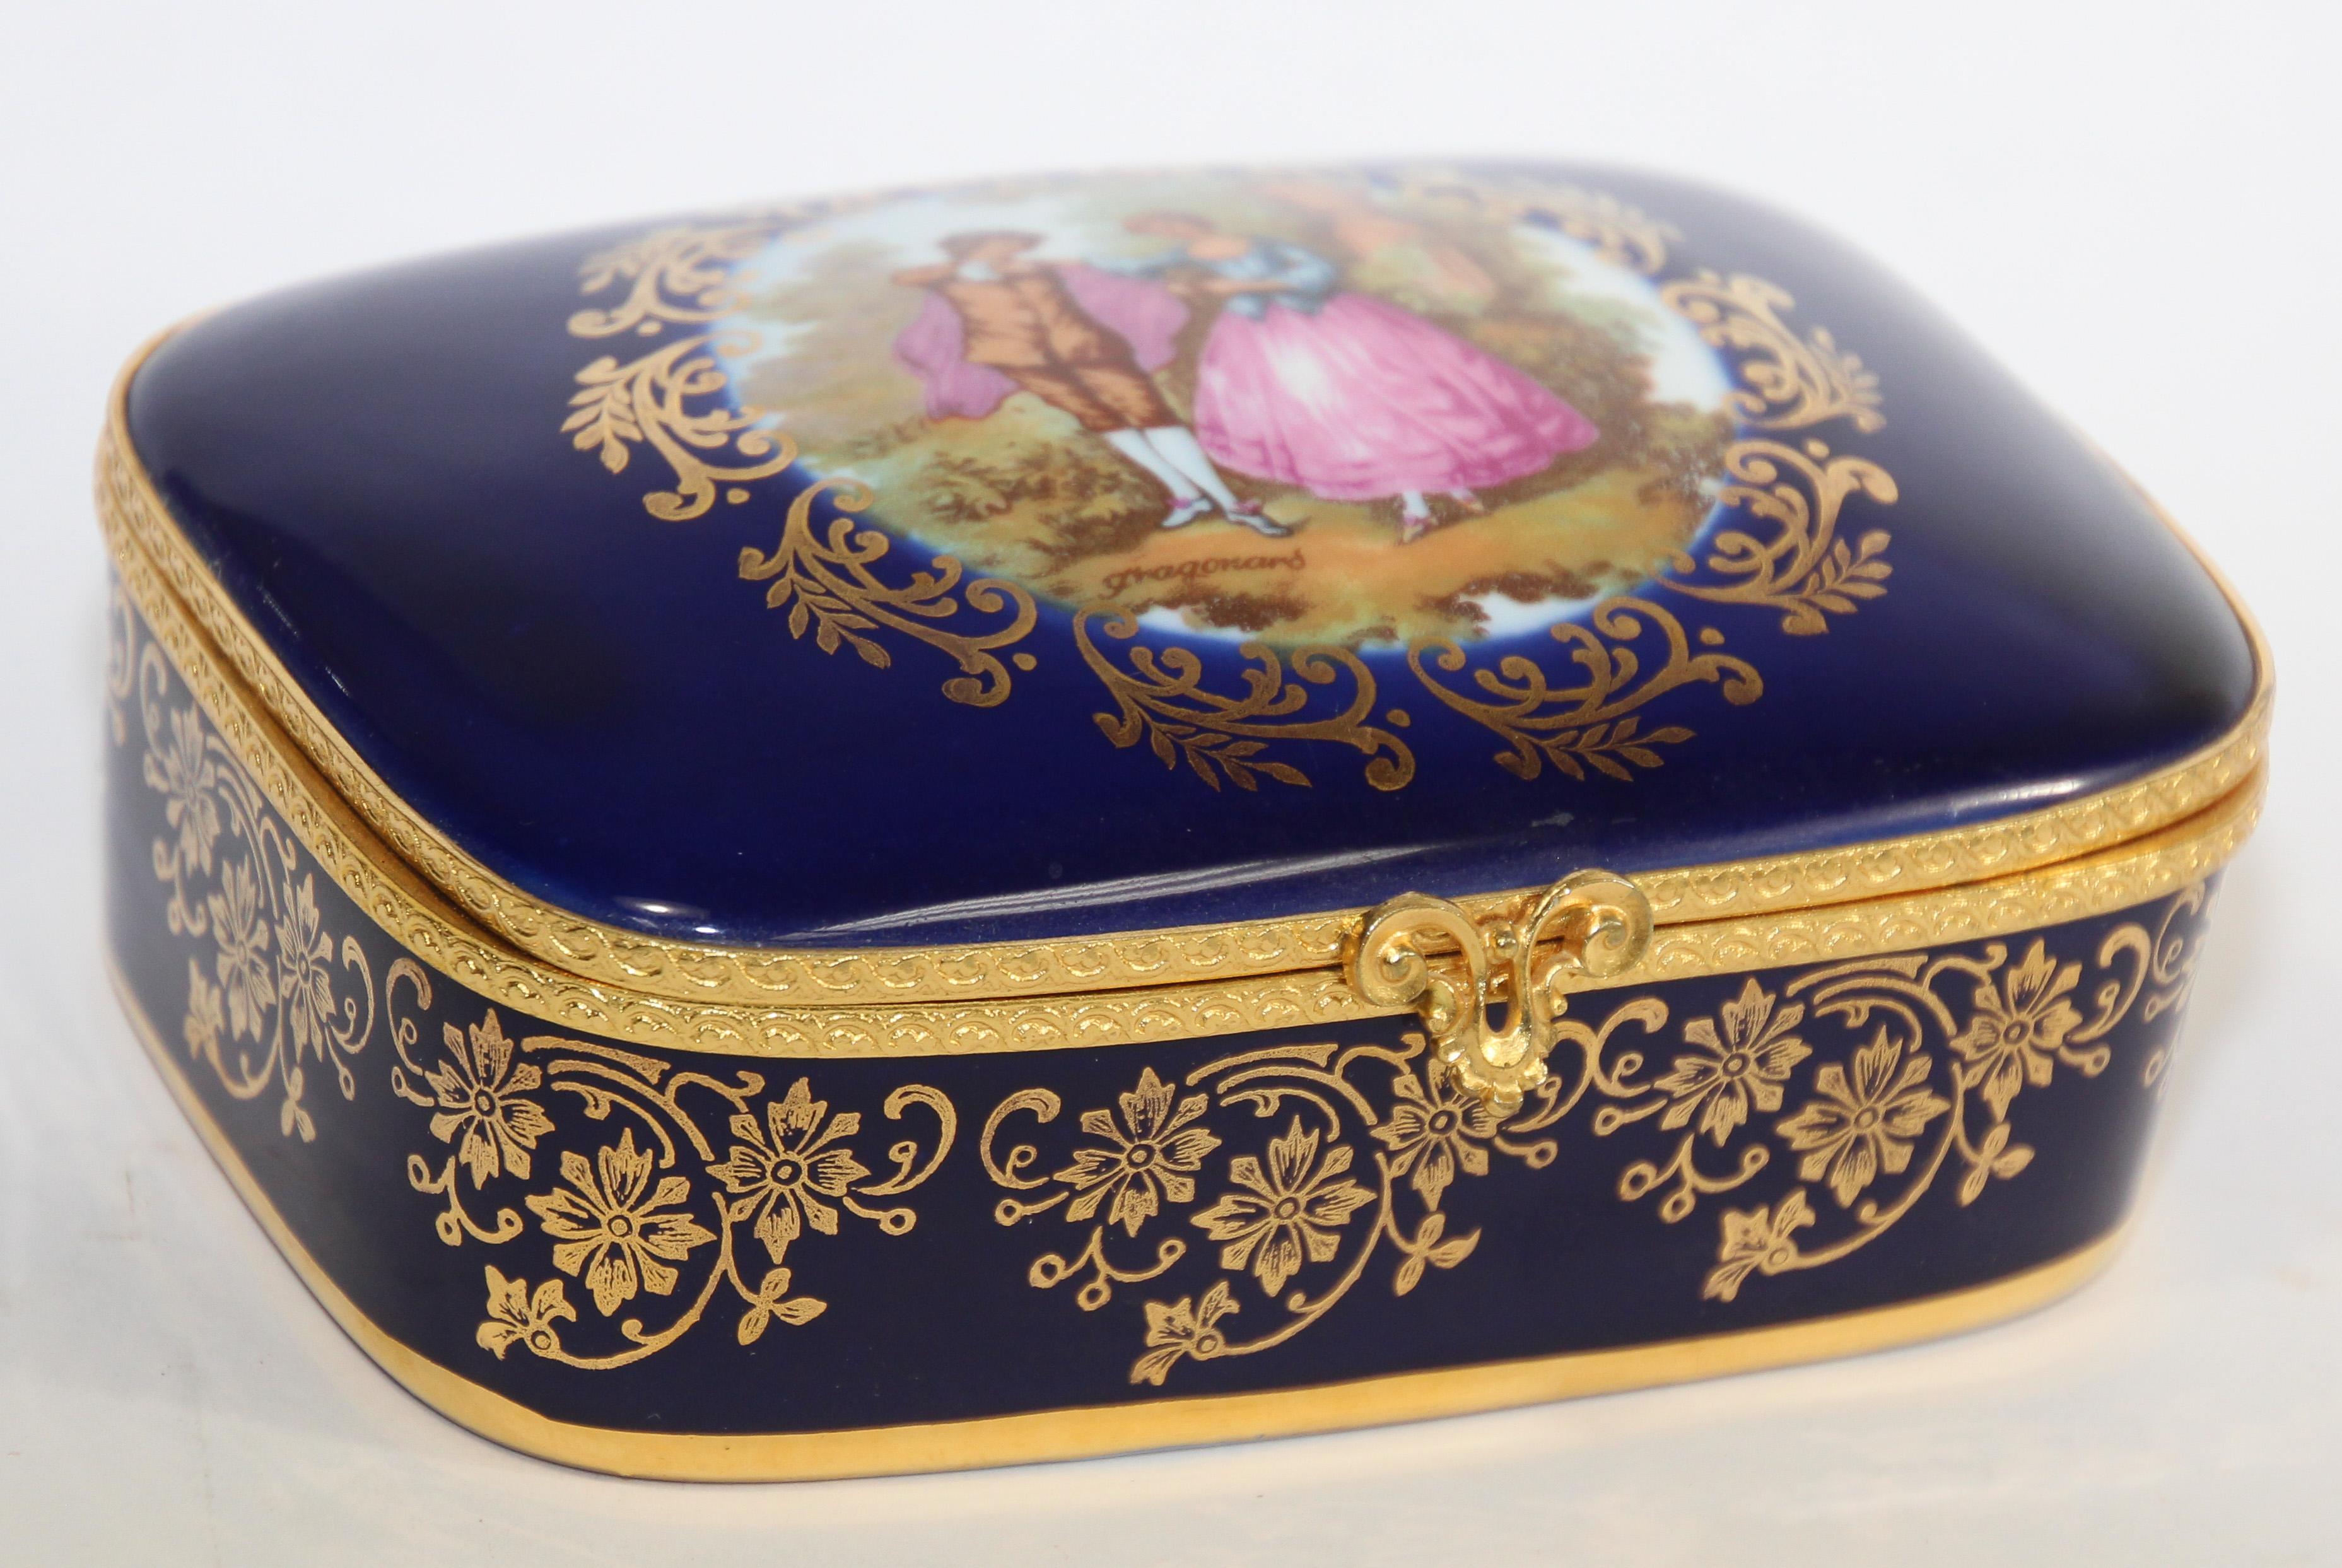 Elegant vintage Limoges 22-karat gold trinket jewellery box.
French vintage Limoges trinket box in cobalt royal blue with fine gold trim. 
Marked on base as “Limoges France Veritable Porcelain D' Art ”.
Hand-made porcelain in Limoges France. Circa